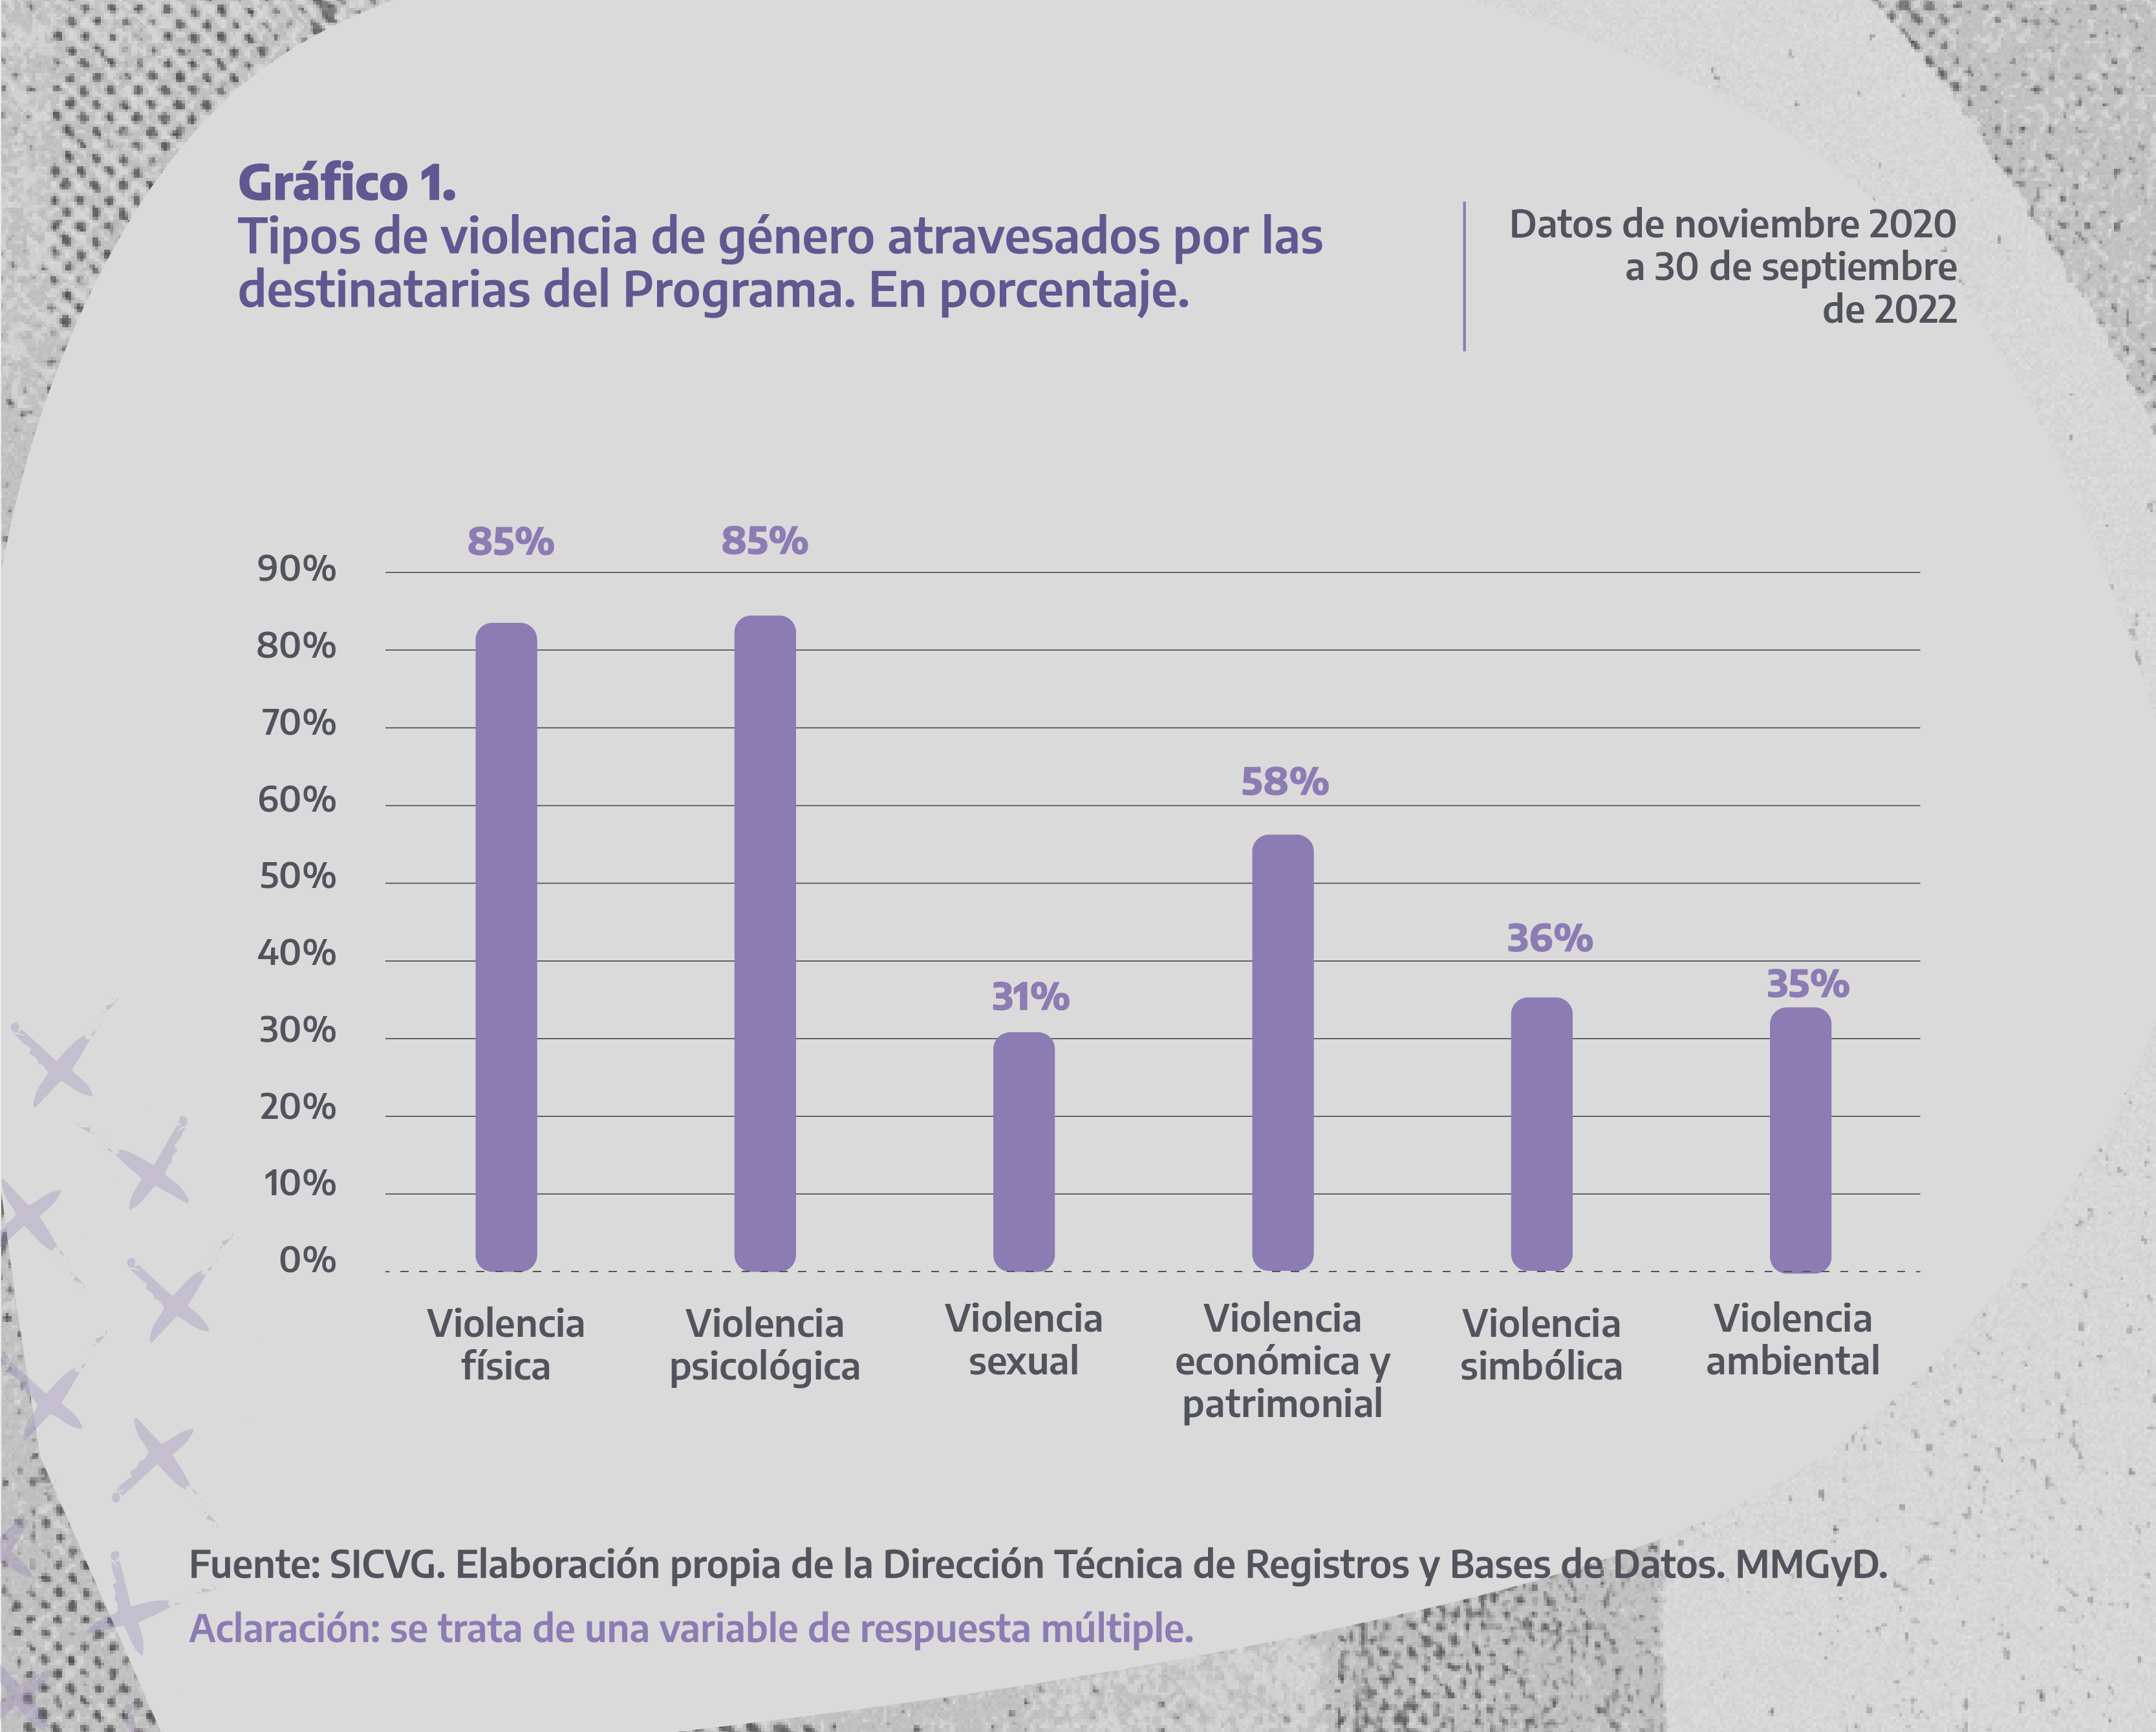 Gráfico 1. Tipos de violencia de género atravesados por las personas destinatarias del Programa. En porcentaje. Datos de noviembre 2020 al 30 de septiembre 2022.